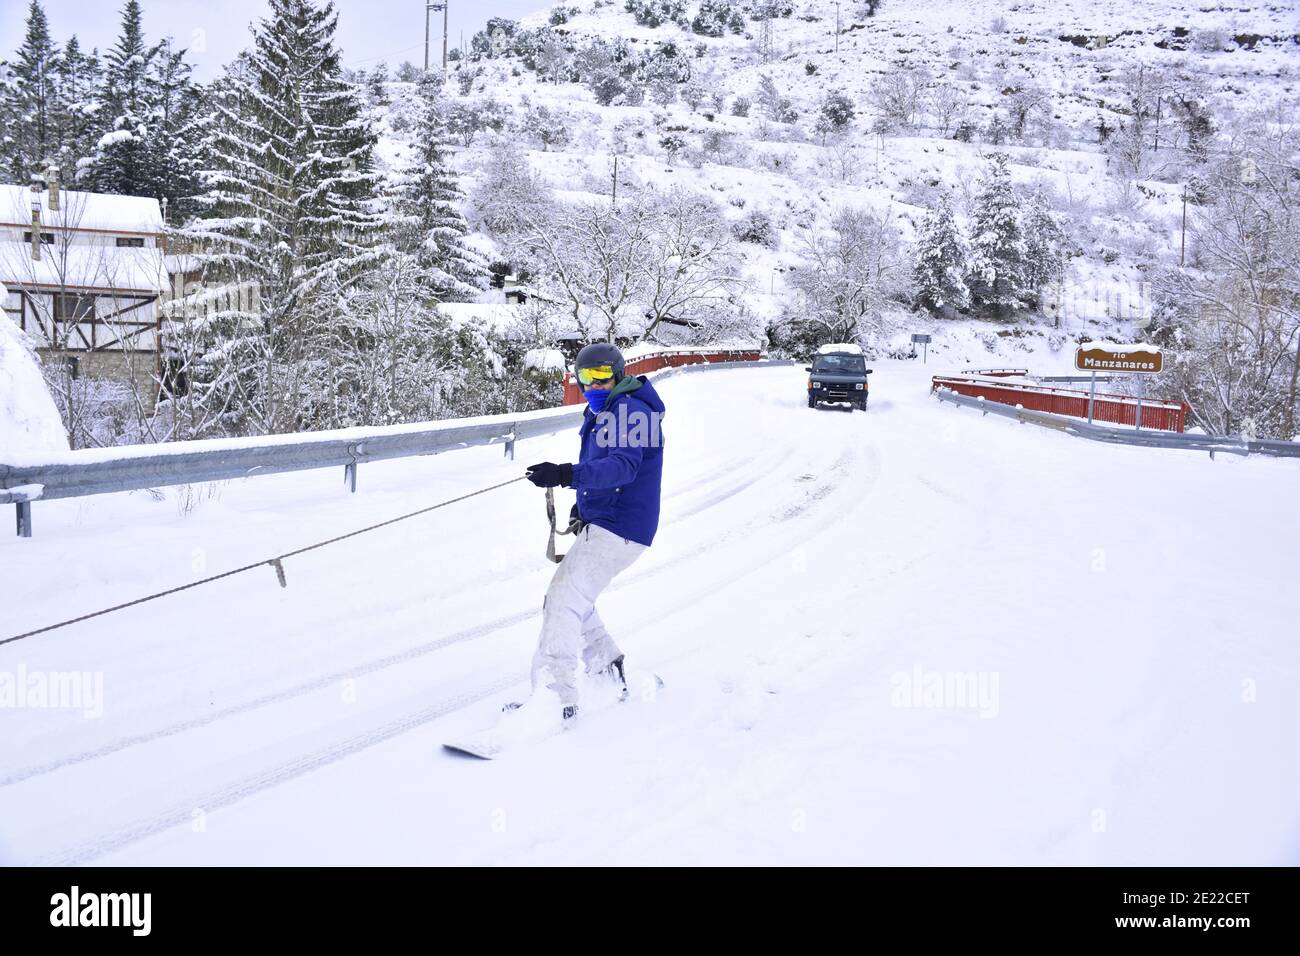 Homme dans une veste bleue de snowboard fixé par une corde à un véhicule. Neige sur une route principale à la Rioja. Tempête de neige de Filomena, Espagne, janvier 2021. Banque D'Images